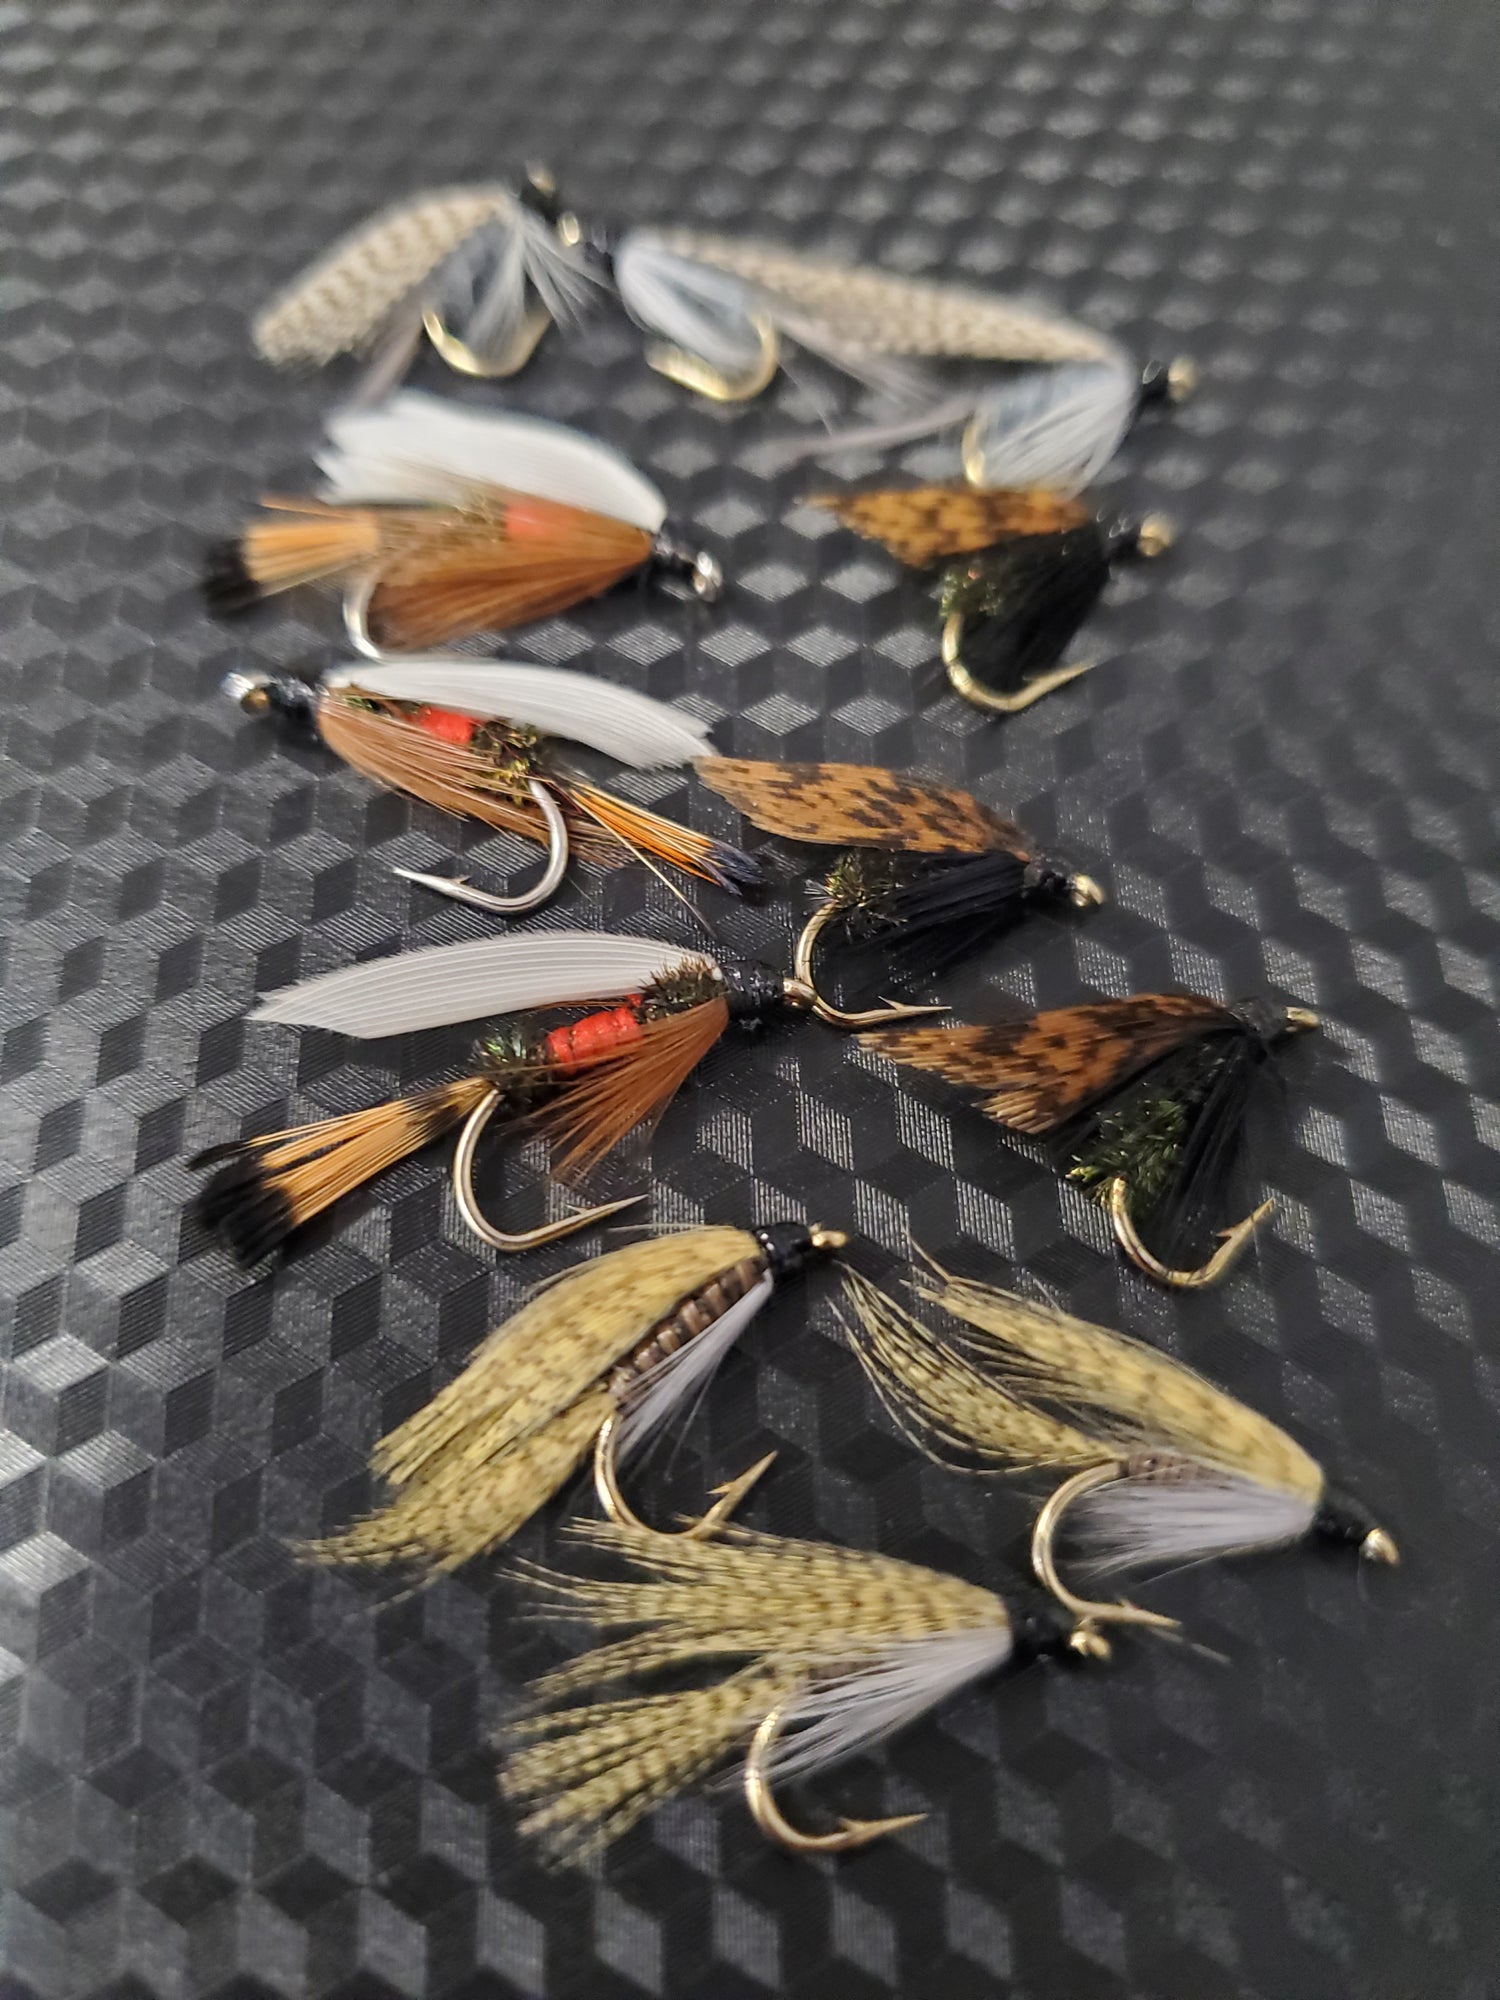 12 Fly Fishing Lures Flies Assortment Mix Flies Handmade Natural